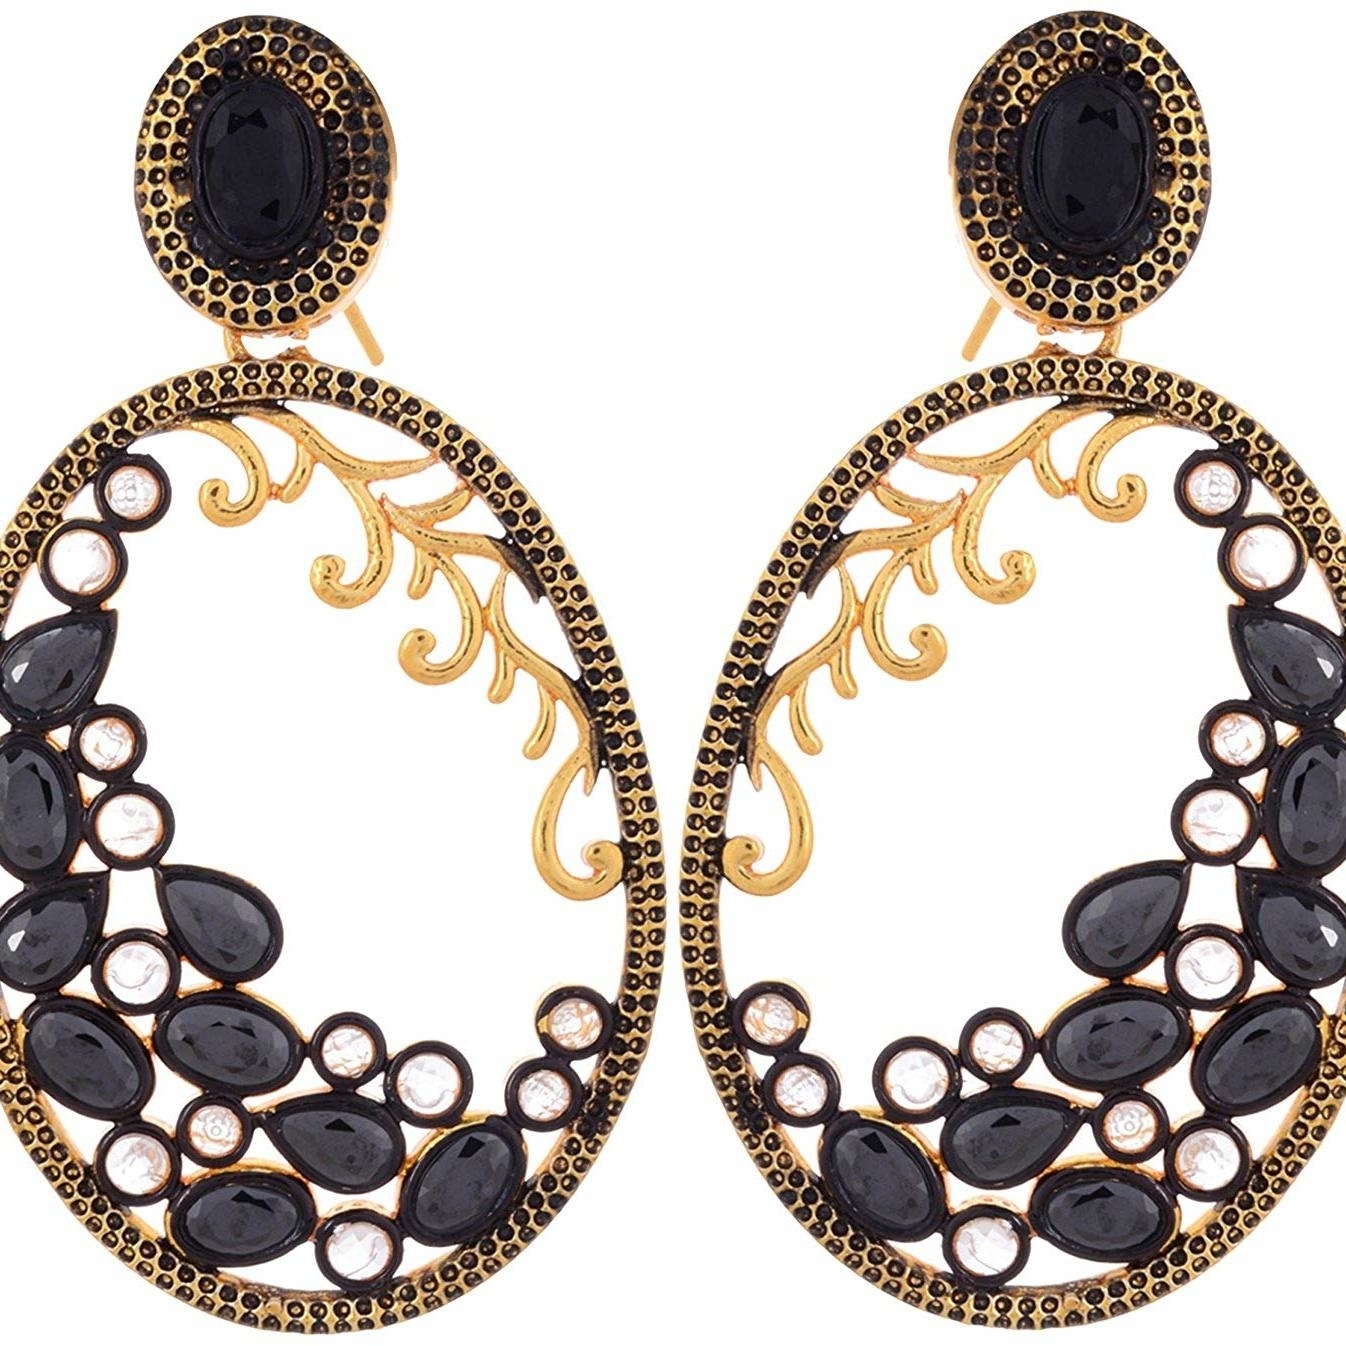 Antique Elegant Black and Gold Filigree dangler Earring